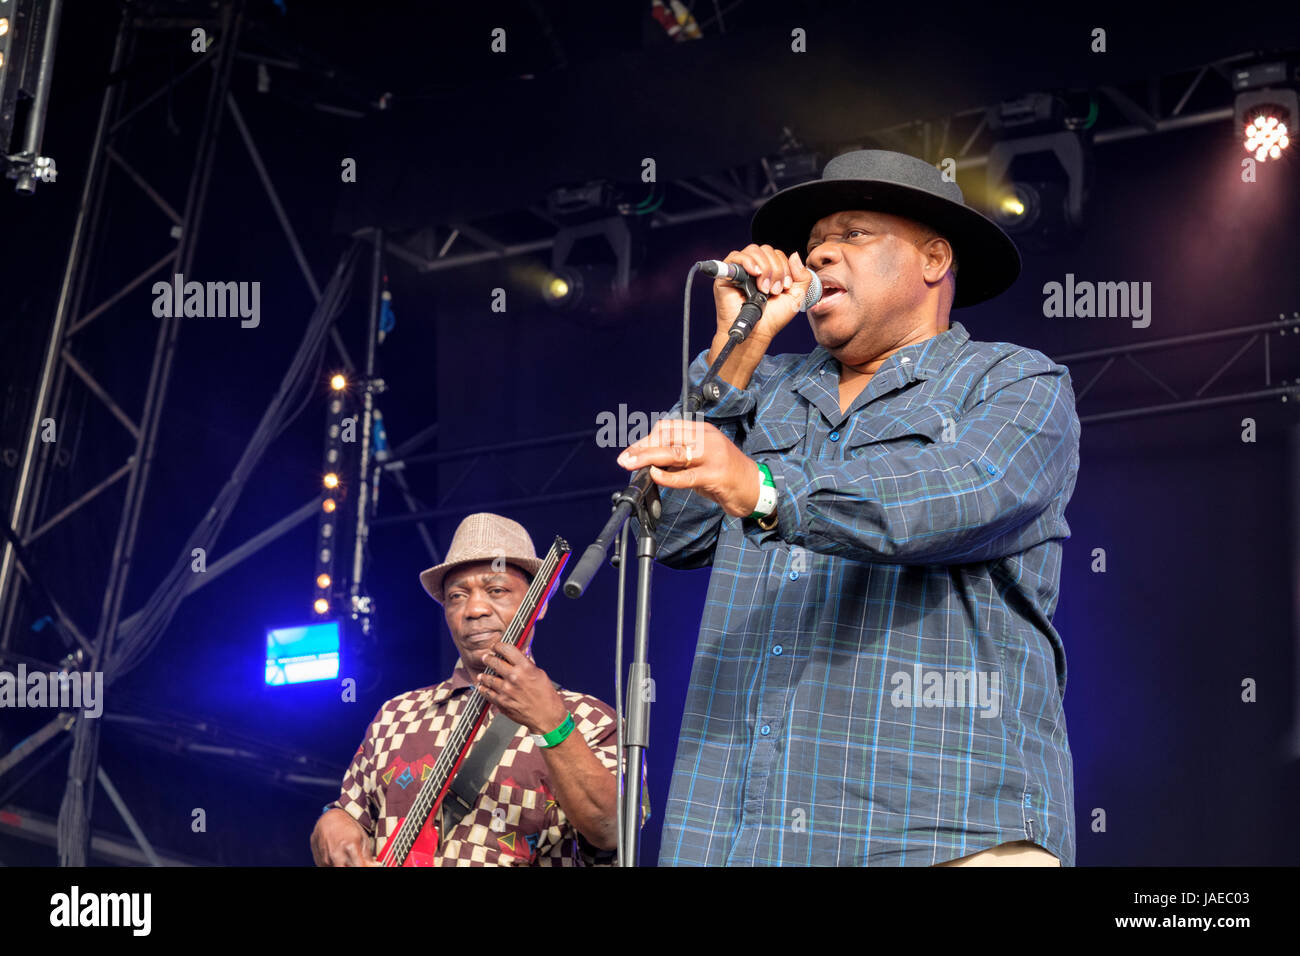 Kanda Bongo Man performing at the Wychwood Festival, Cheltenham, UK Stock Photo